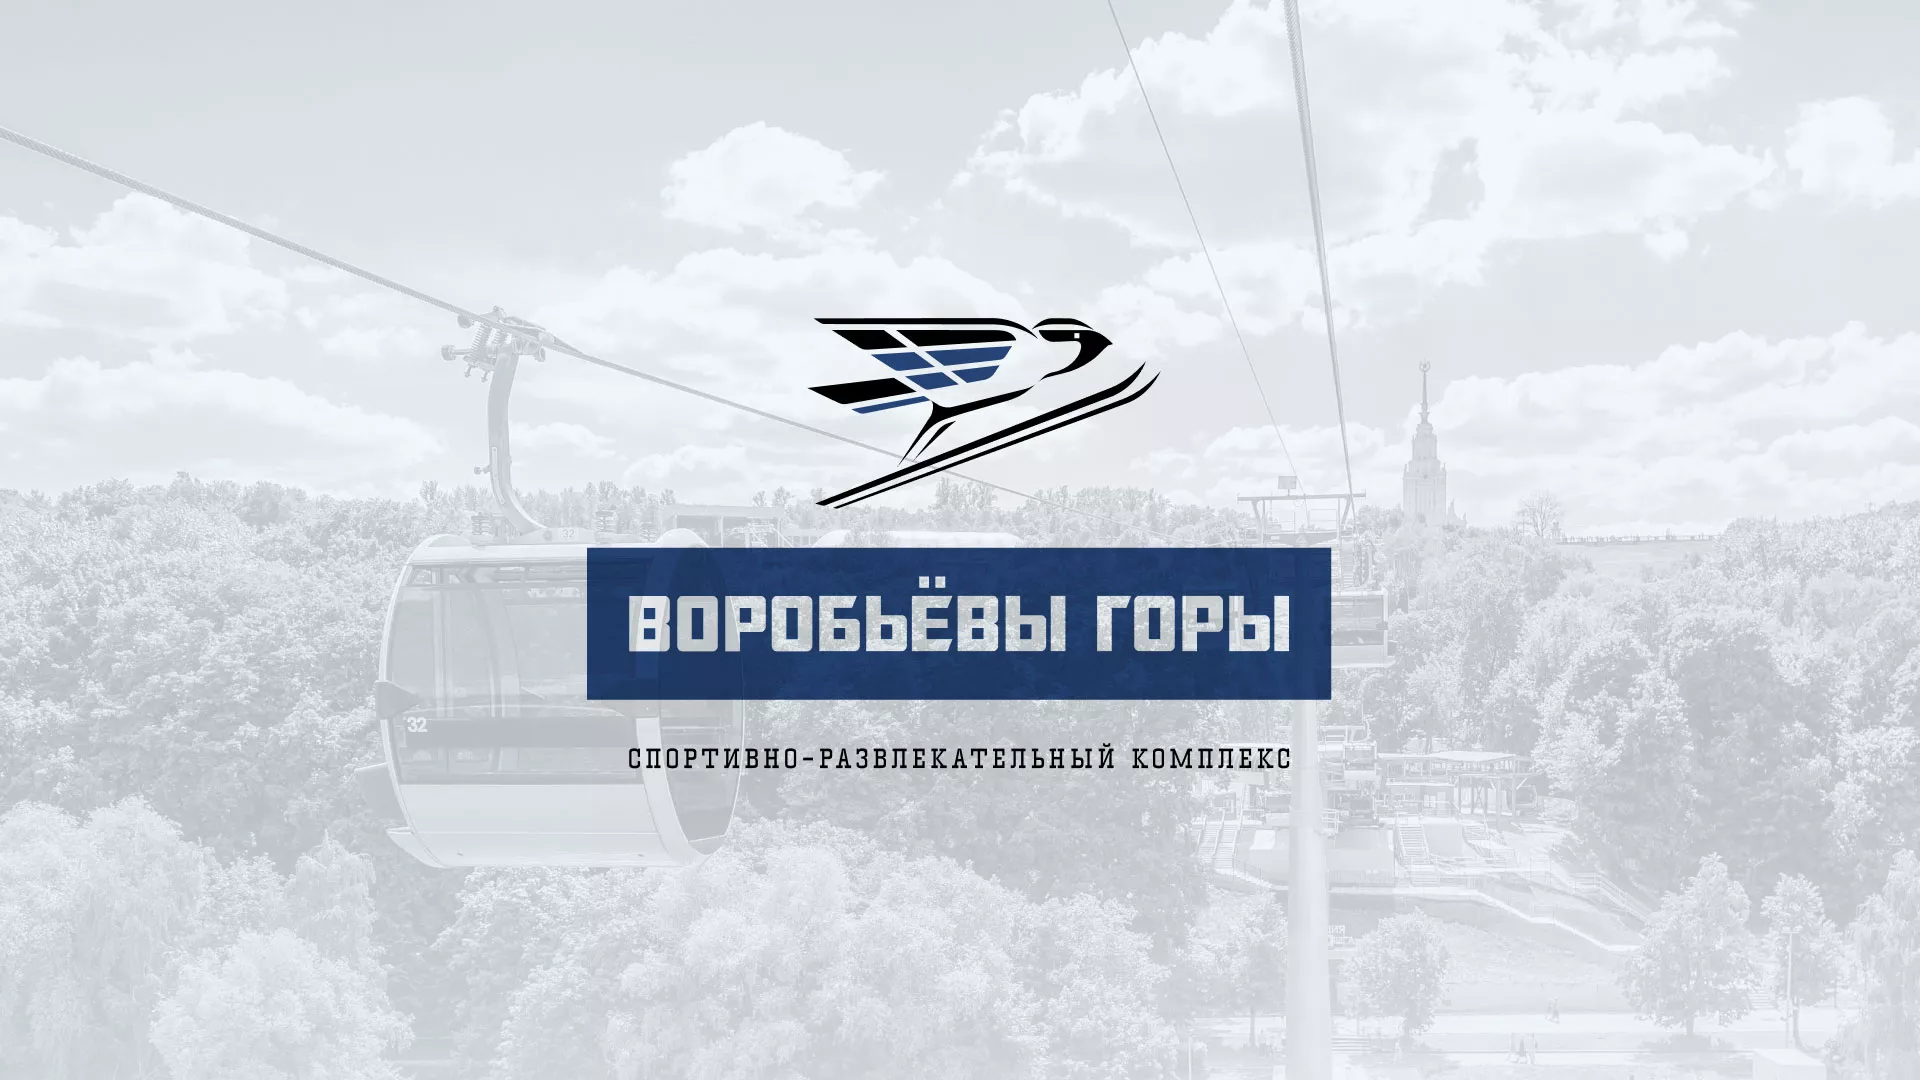 Разработка сайта в Александрове для спортивно-развлекательного комплекса «Воробьёвы горы»